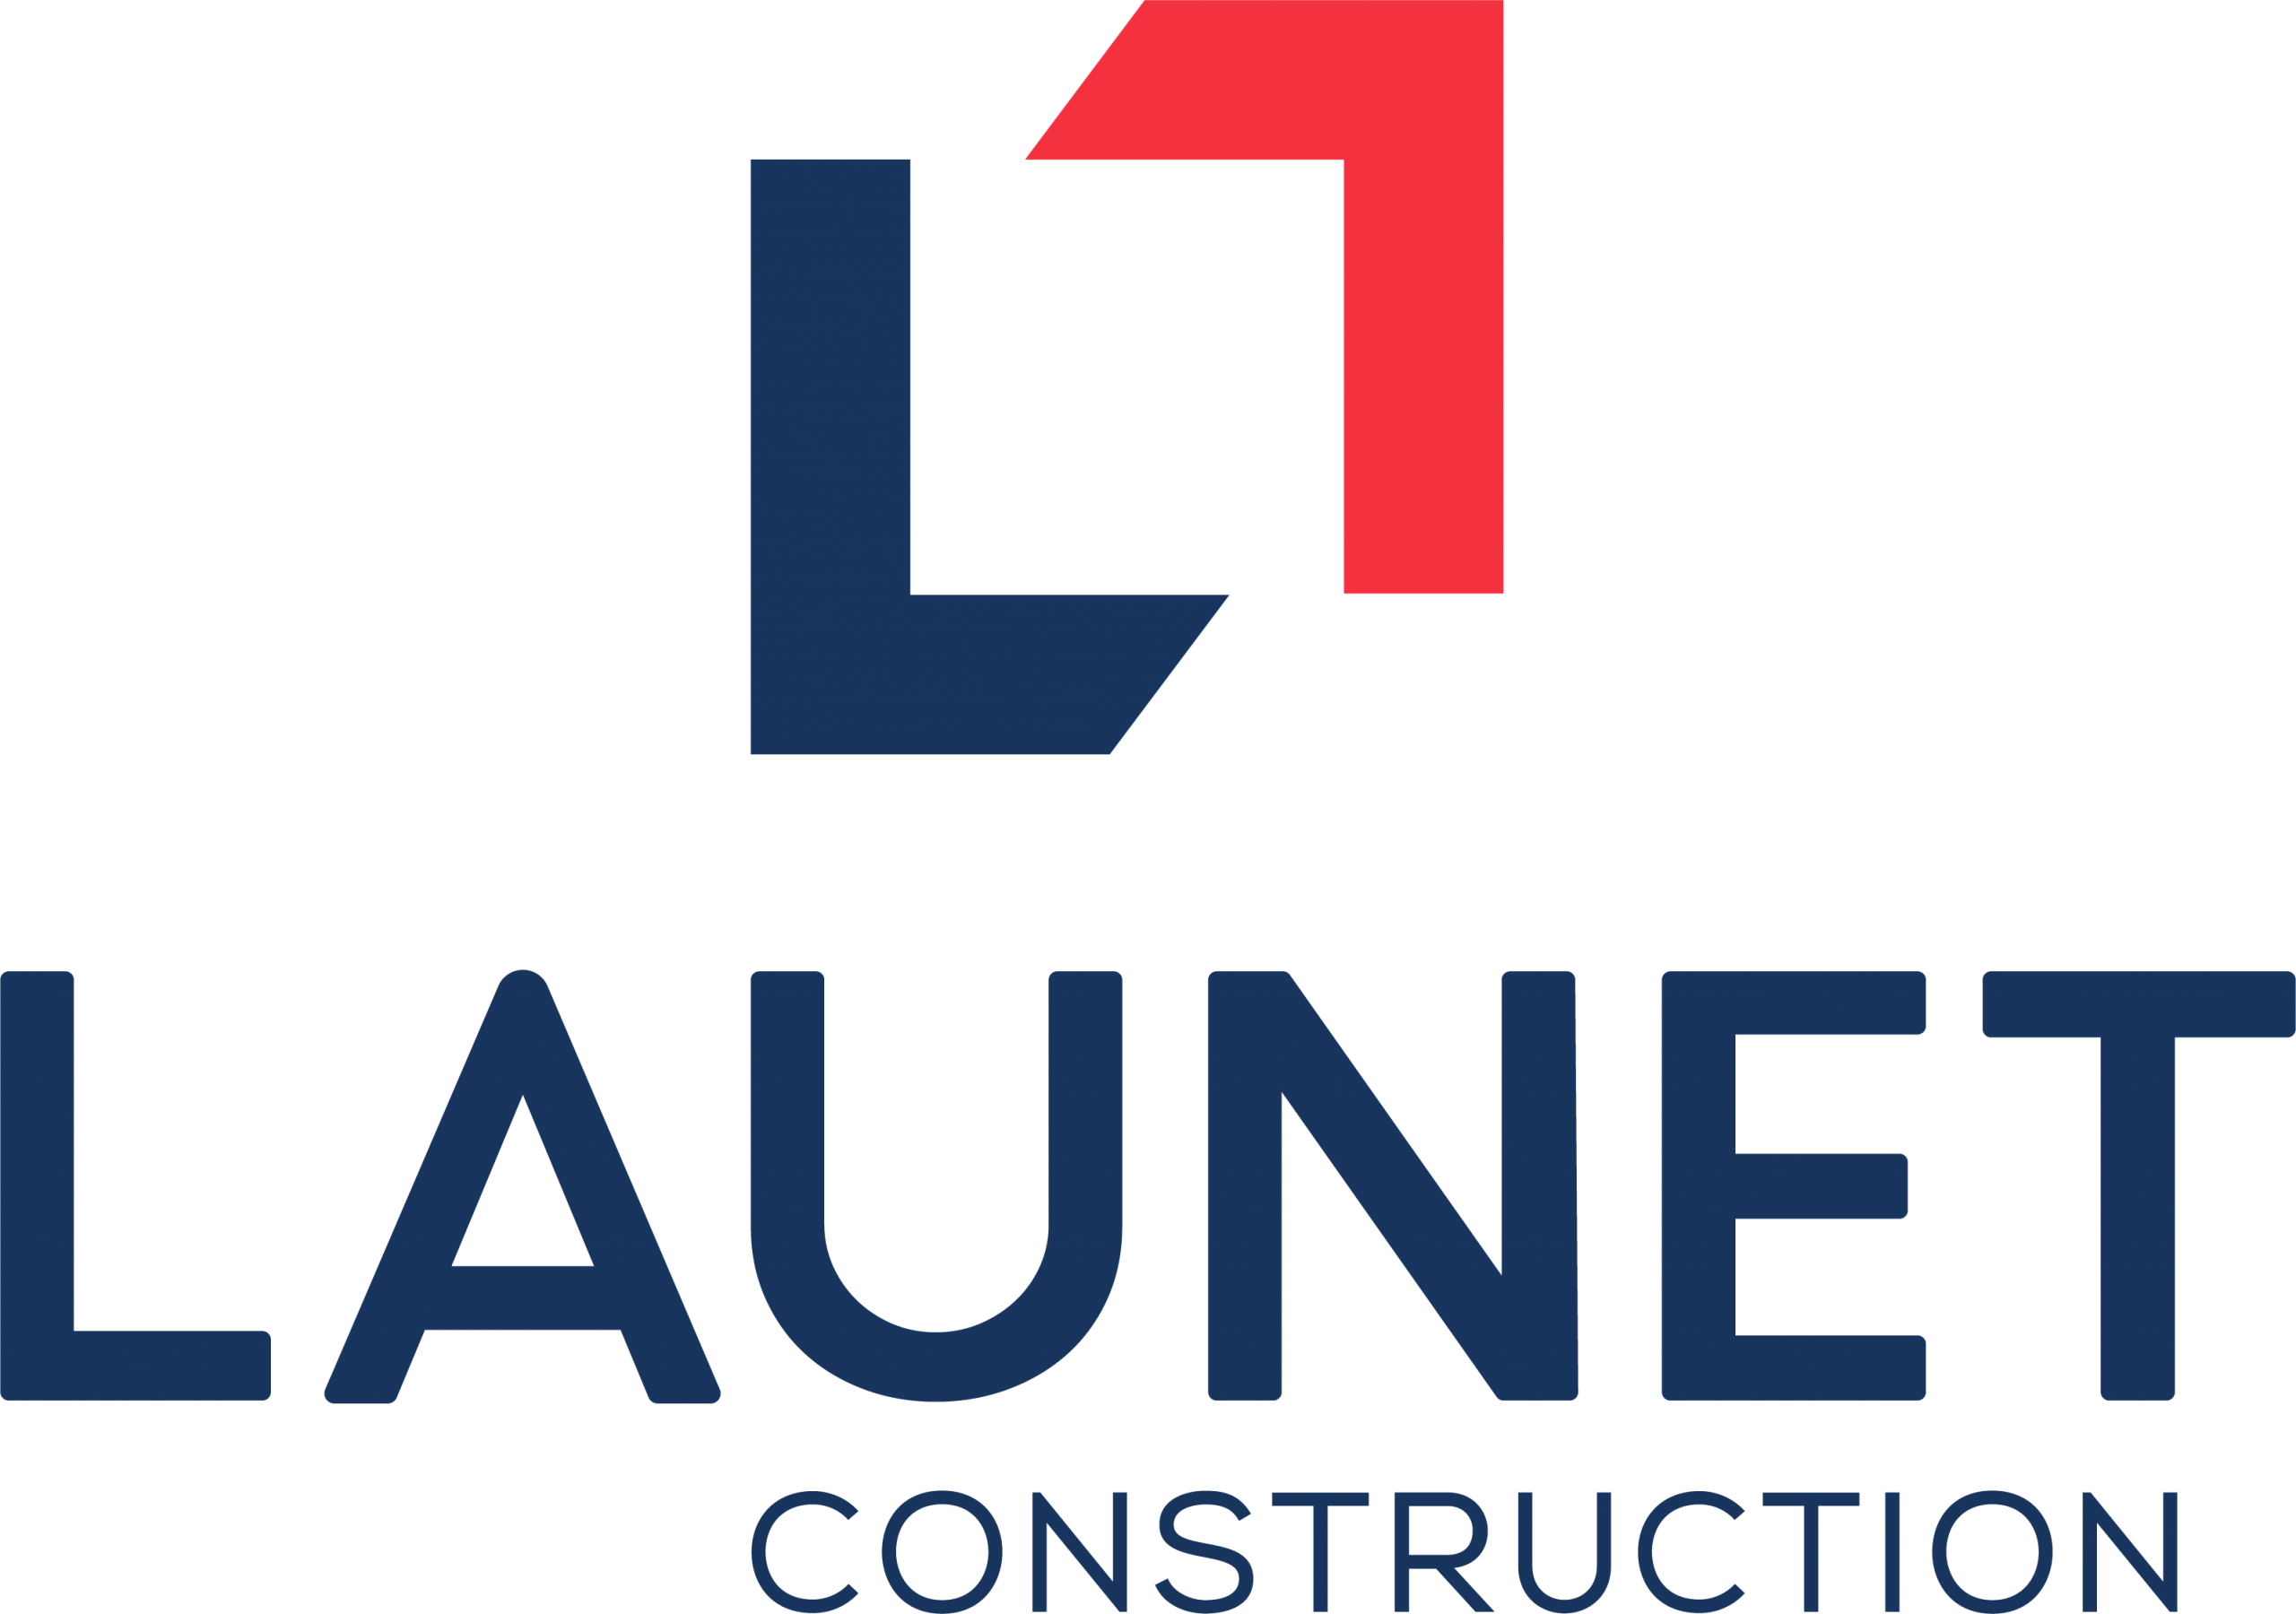 Launet Construction